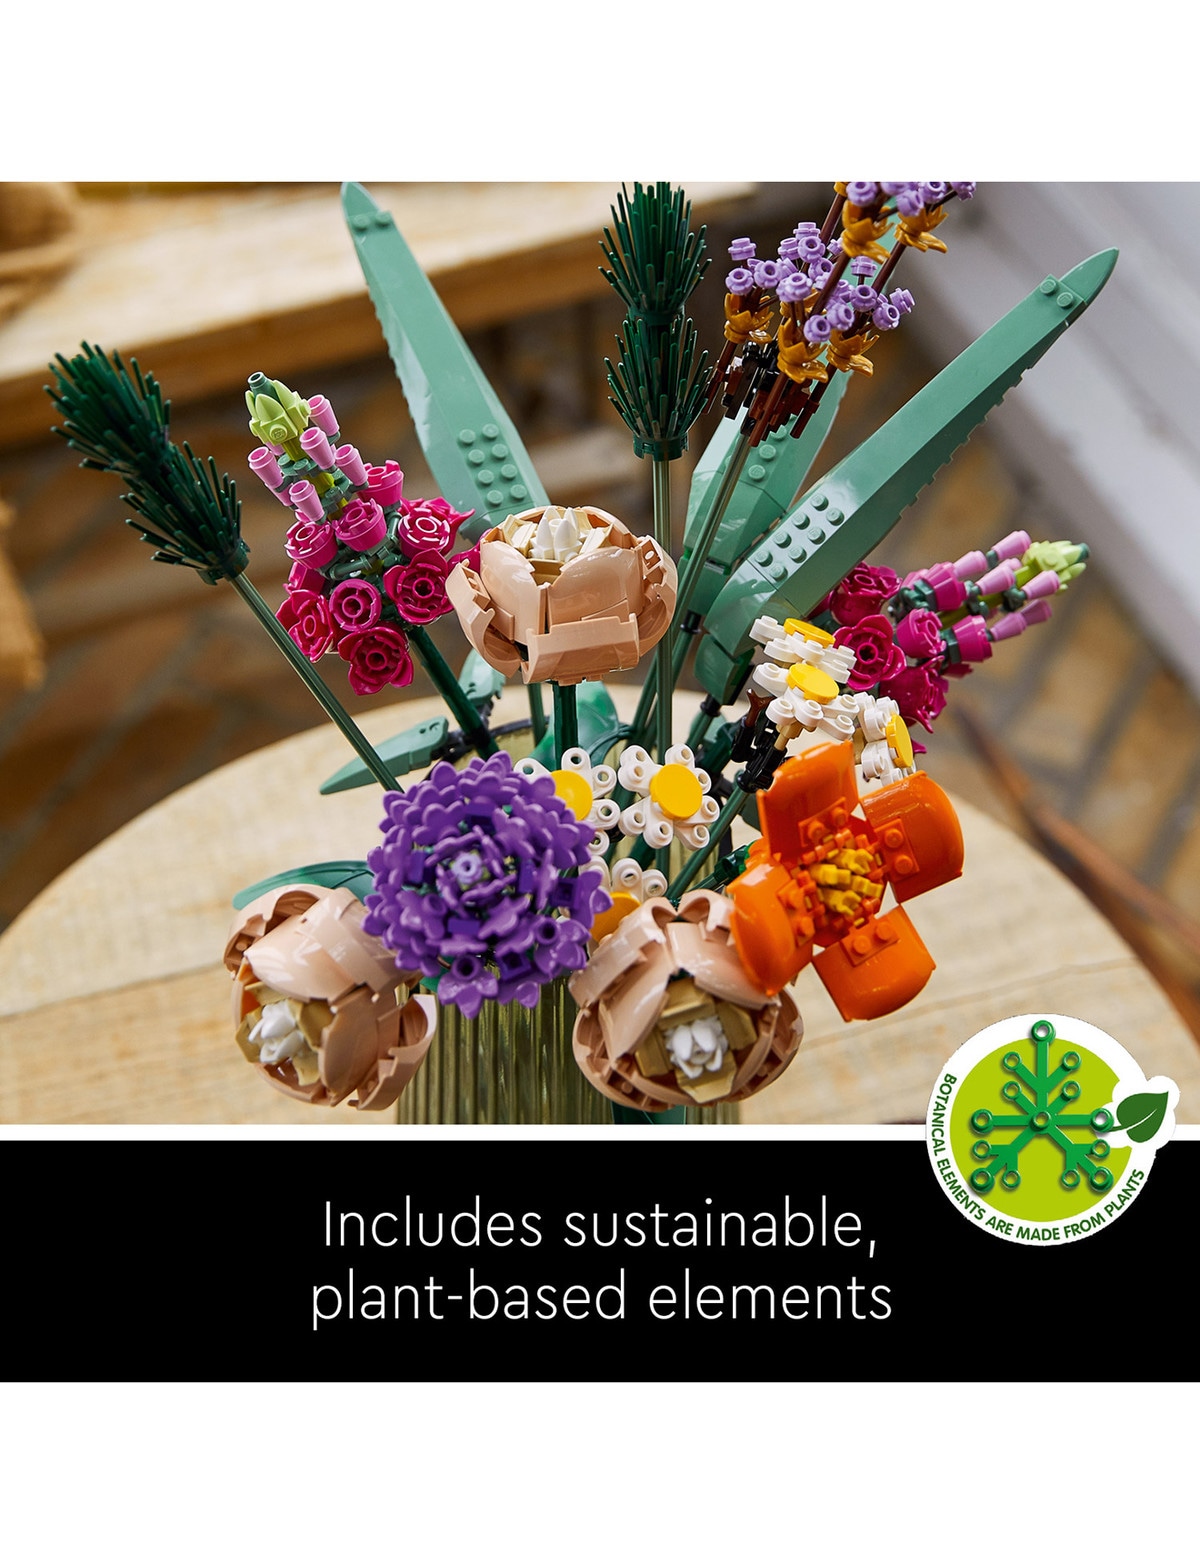 LEGO Creator Expert EXPERT Botanical Collection - Flower Bouquet